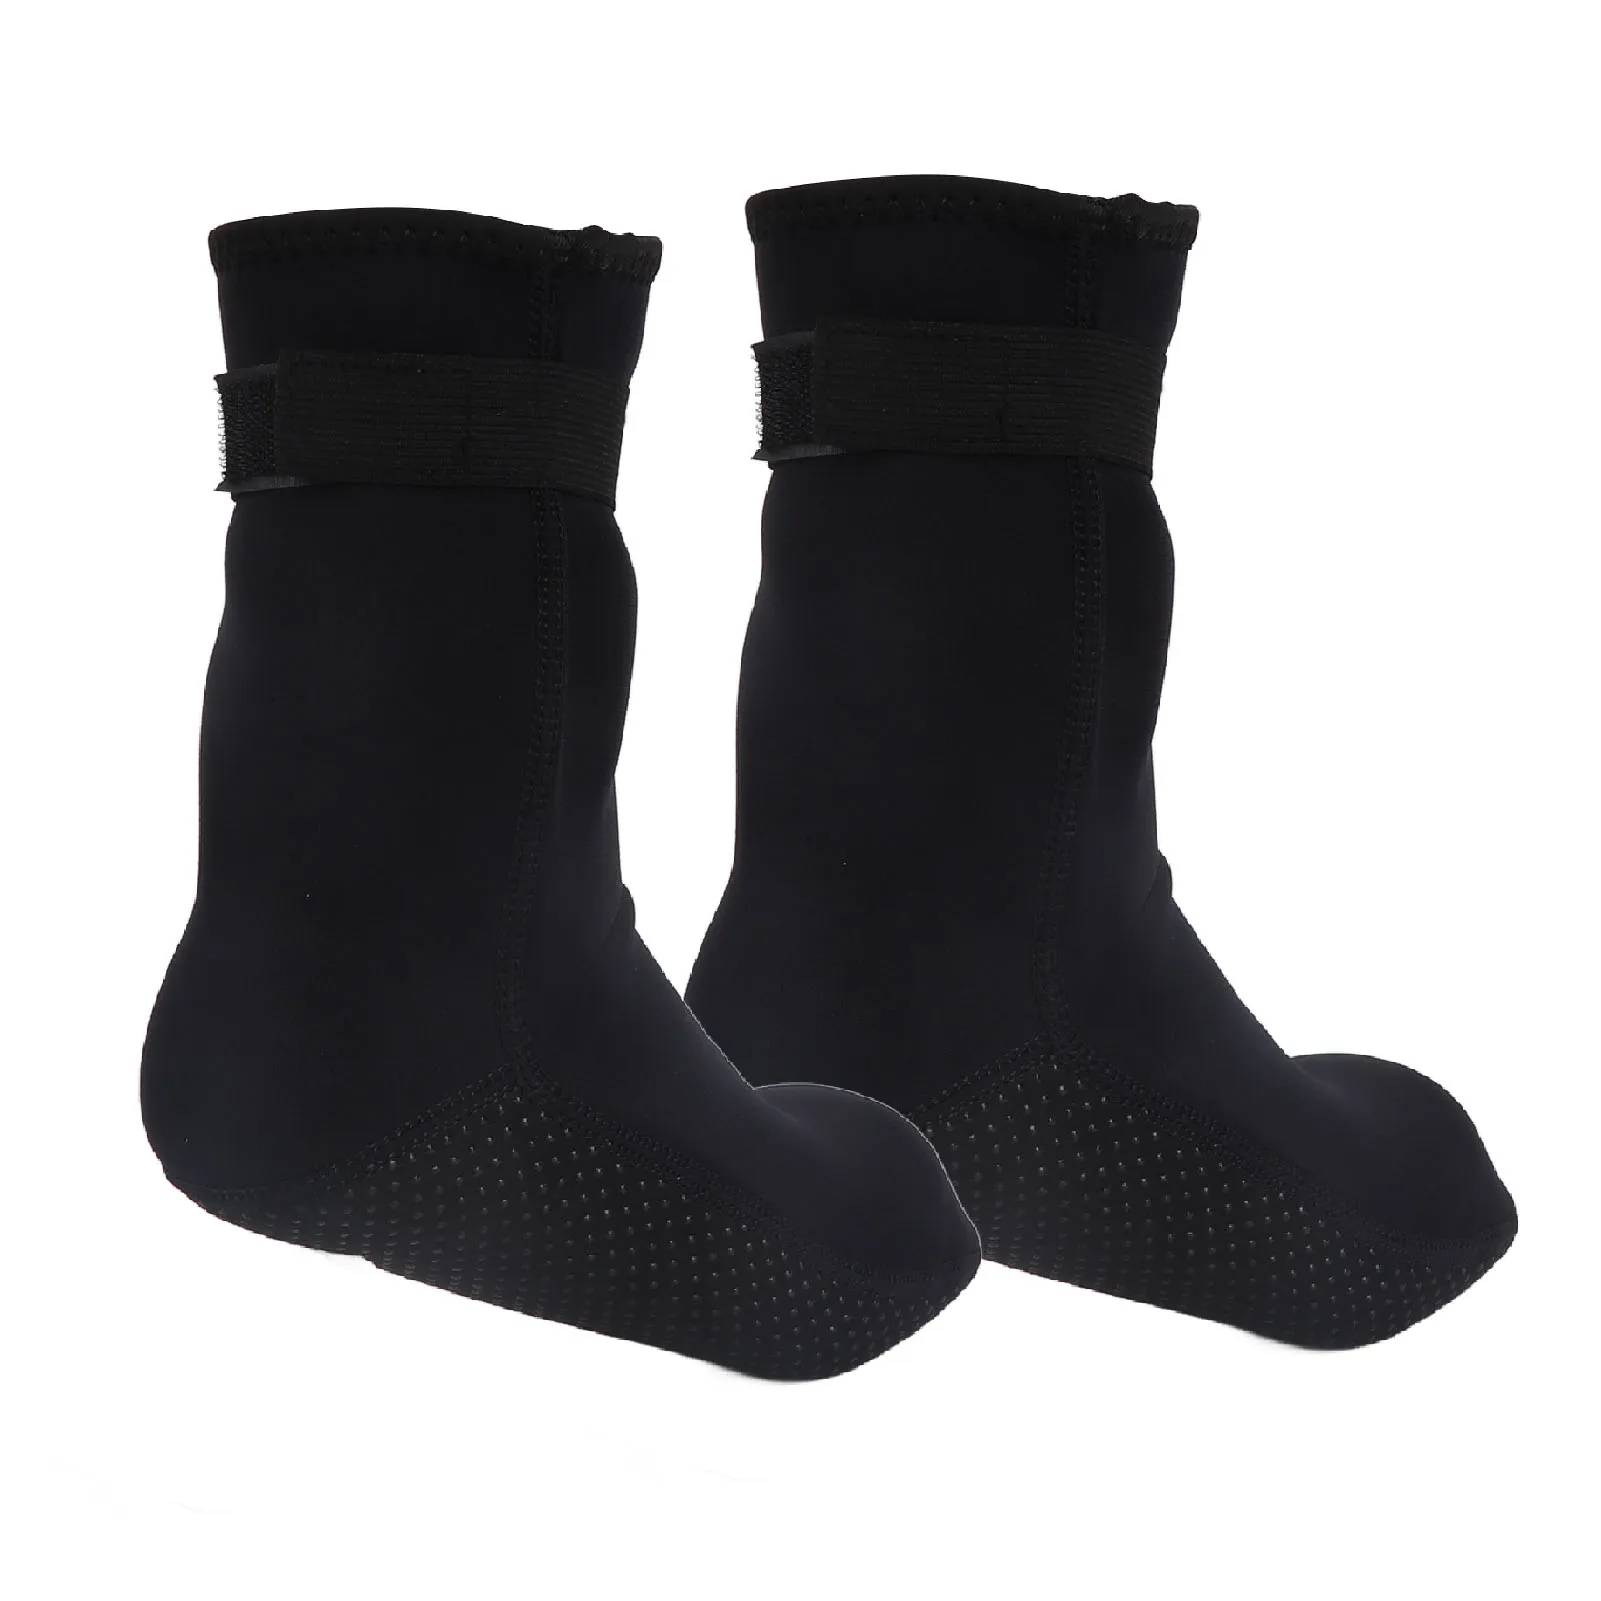 3 мм Неопреновые Носки Для Дайвинга Защитные Водонепроницаемые Быстросохнущие Носки для Серфинга Высокоэластичные для Плавания для Глубокого Дайвинга для Женщин3